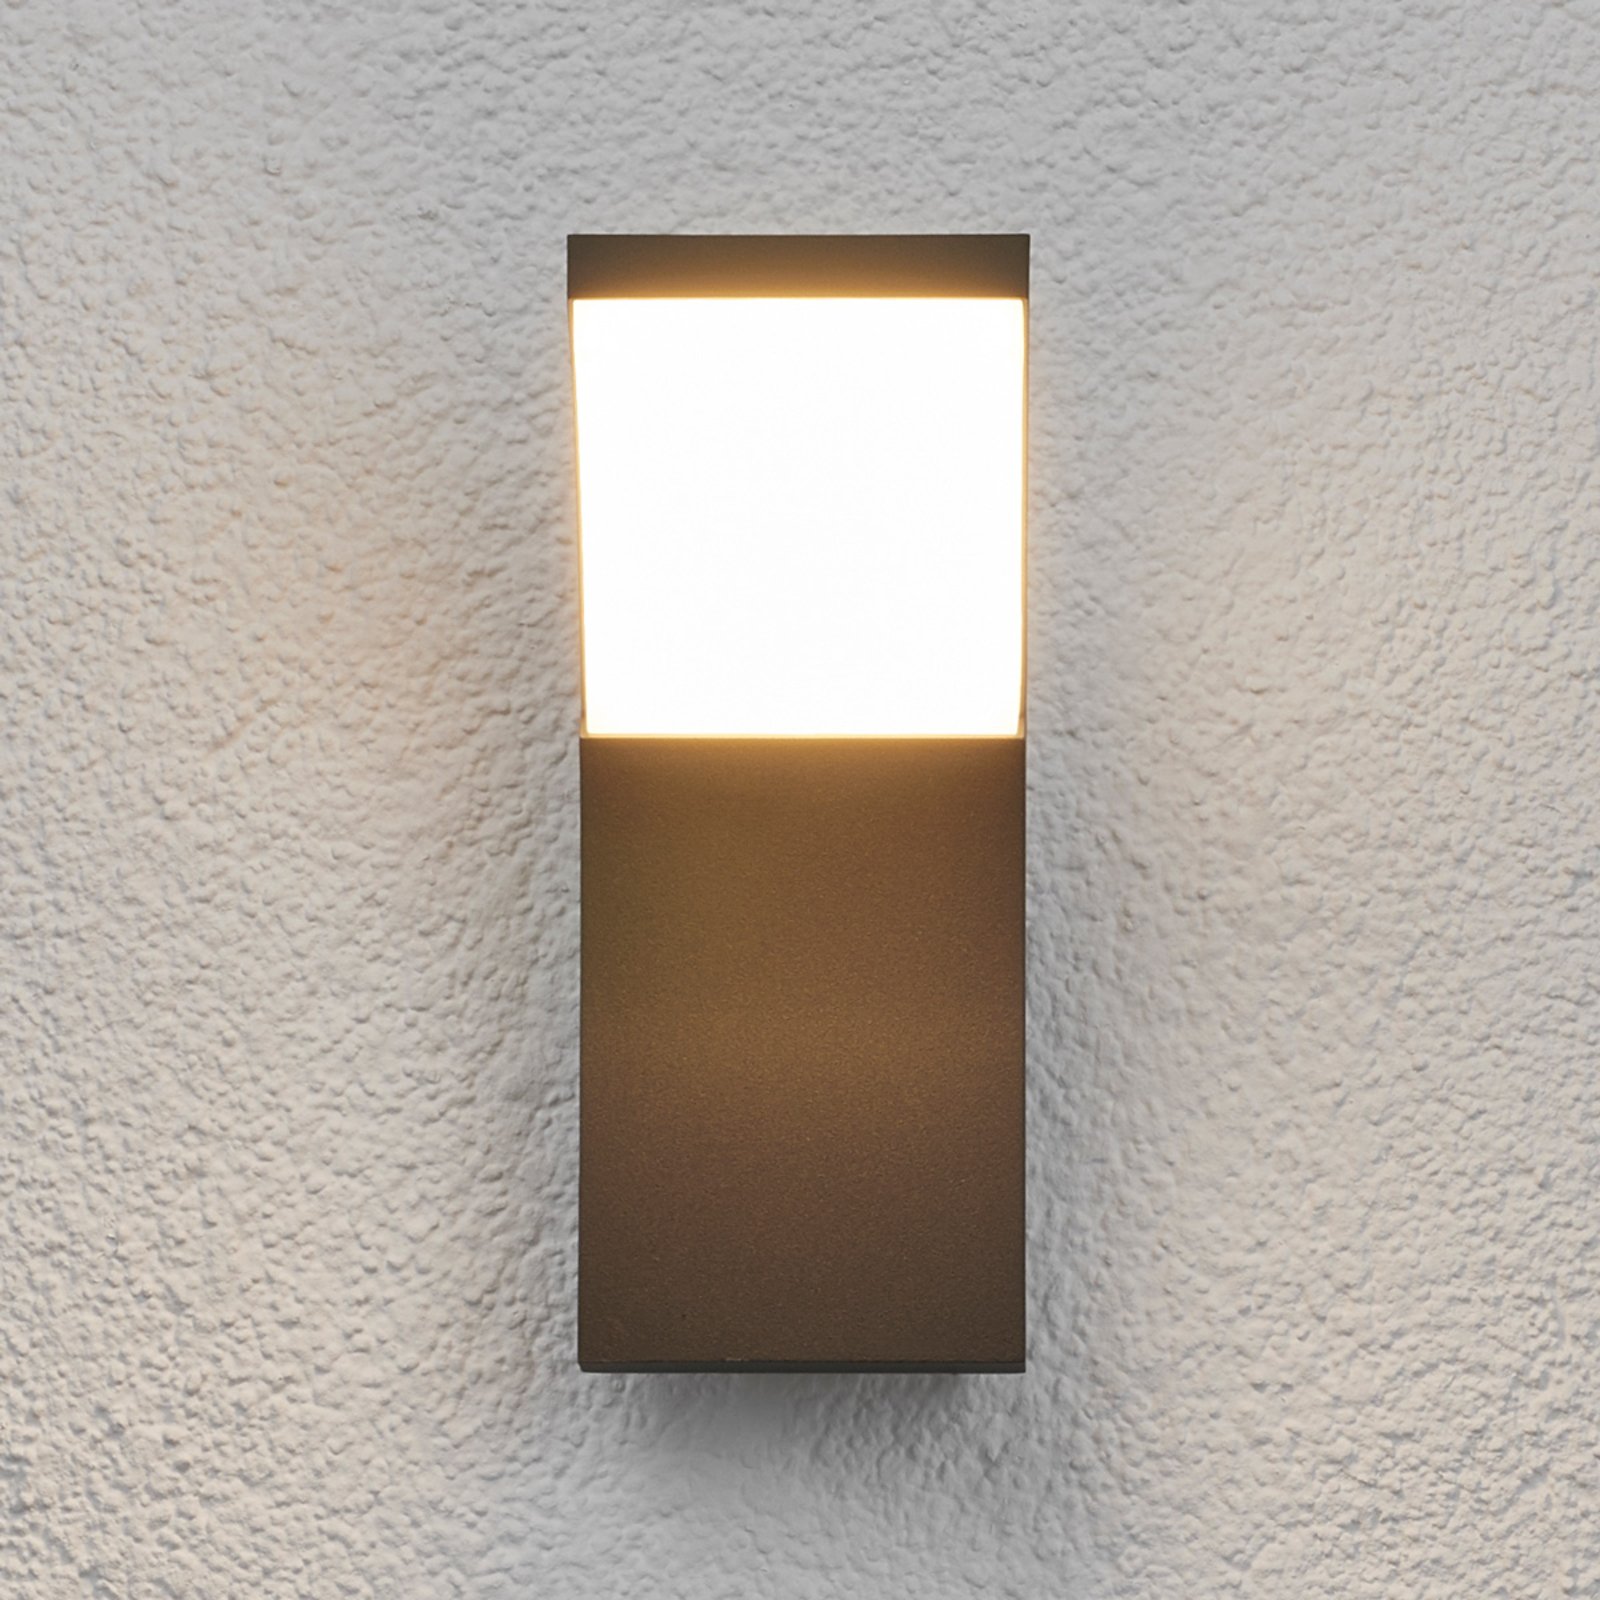 Lampada Timm con LED, a parete, per esterni